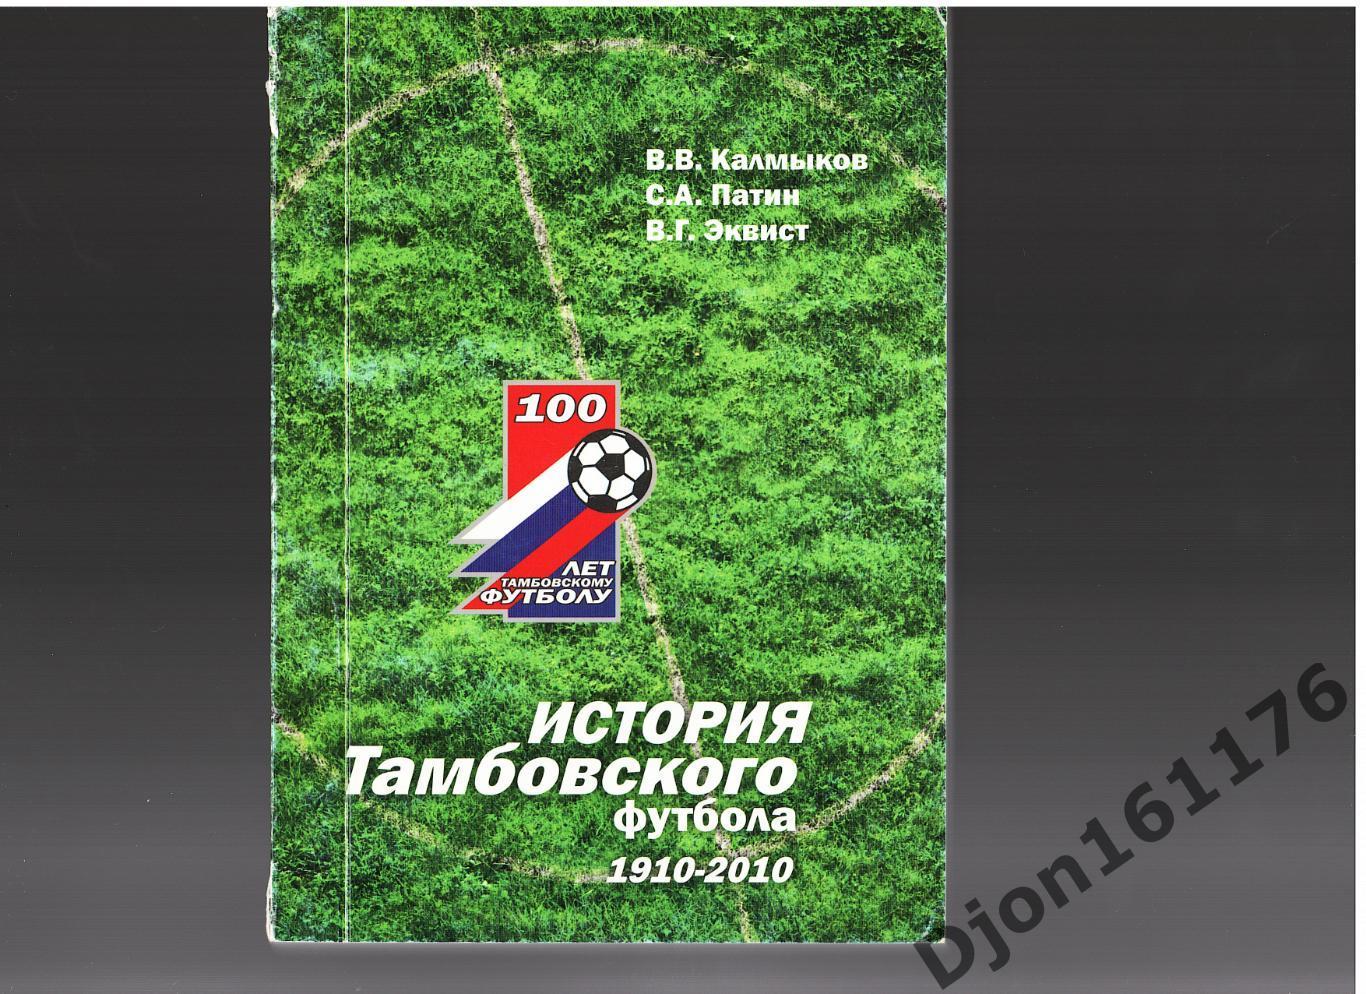 В.В.Калмыков, С.А.Патин, В.Г.Эквист. «История Тамбовского футбола 1910-2010».